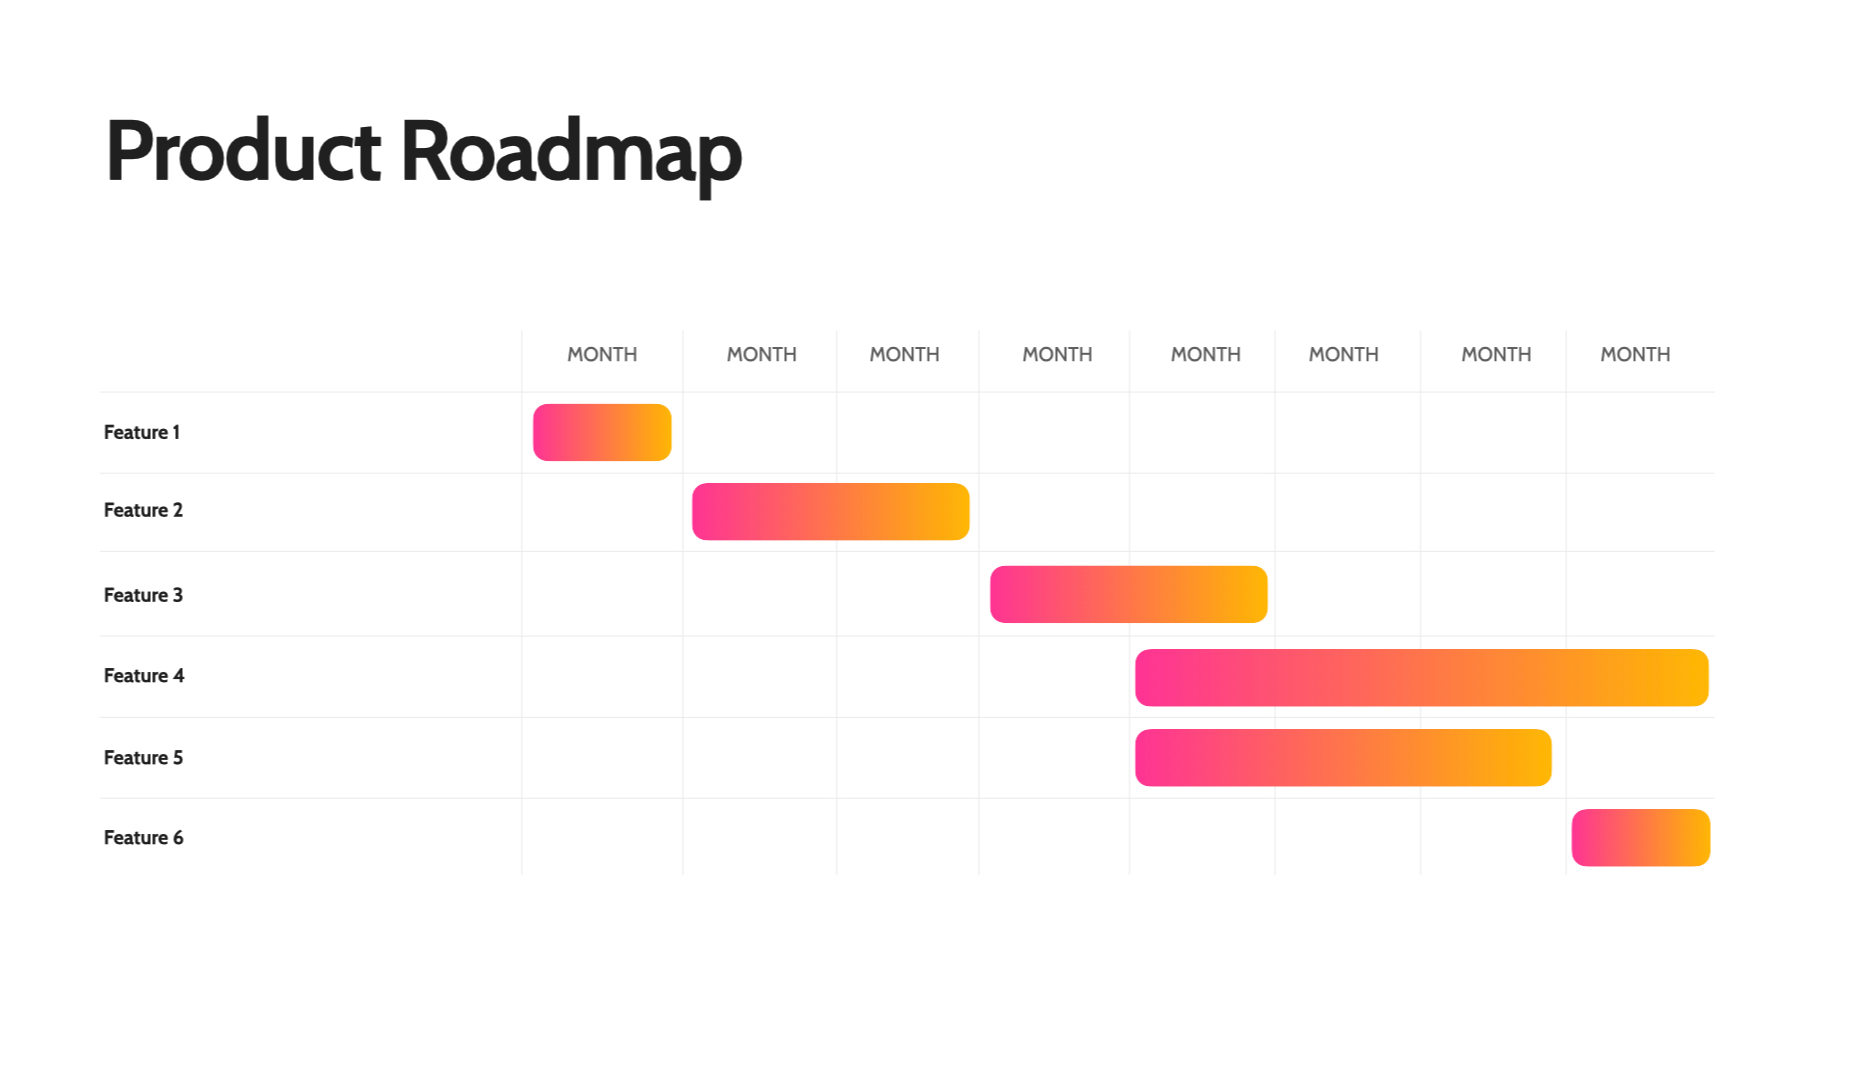 A roadmap schematic